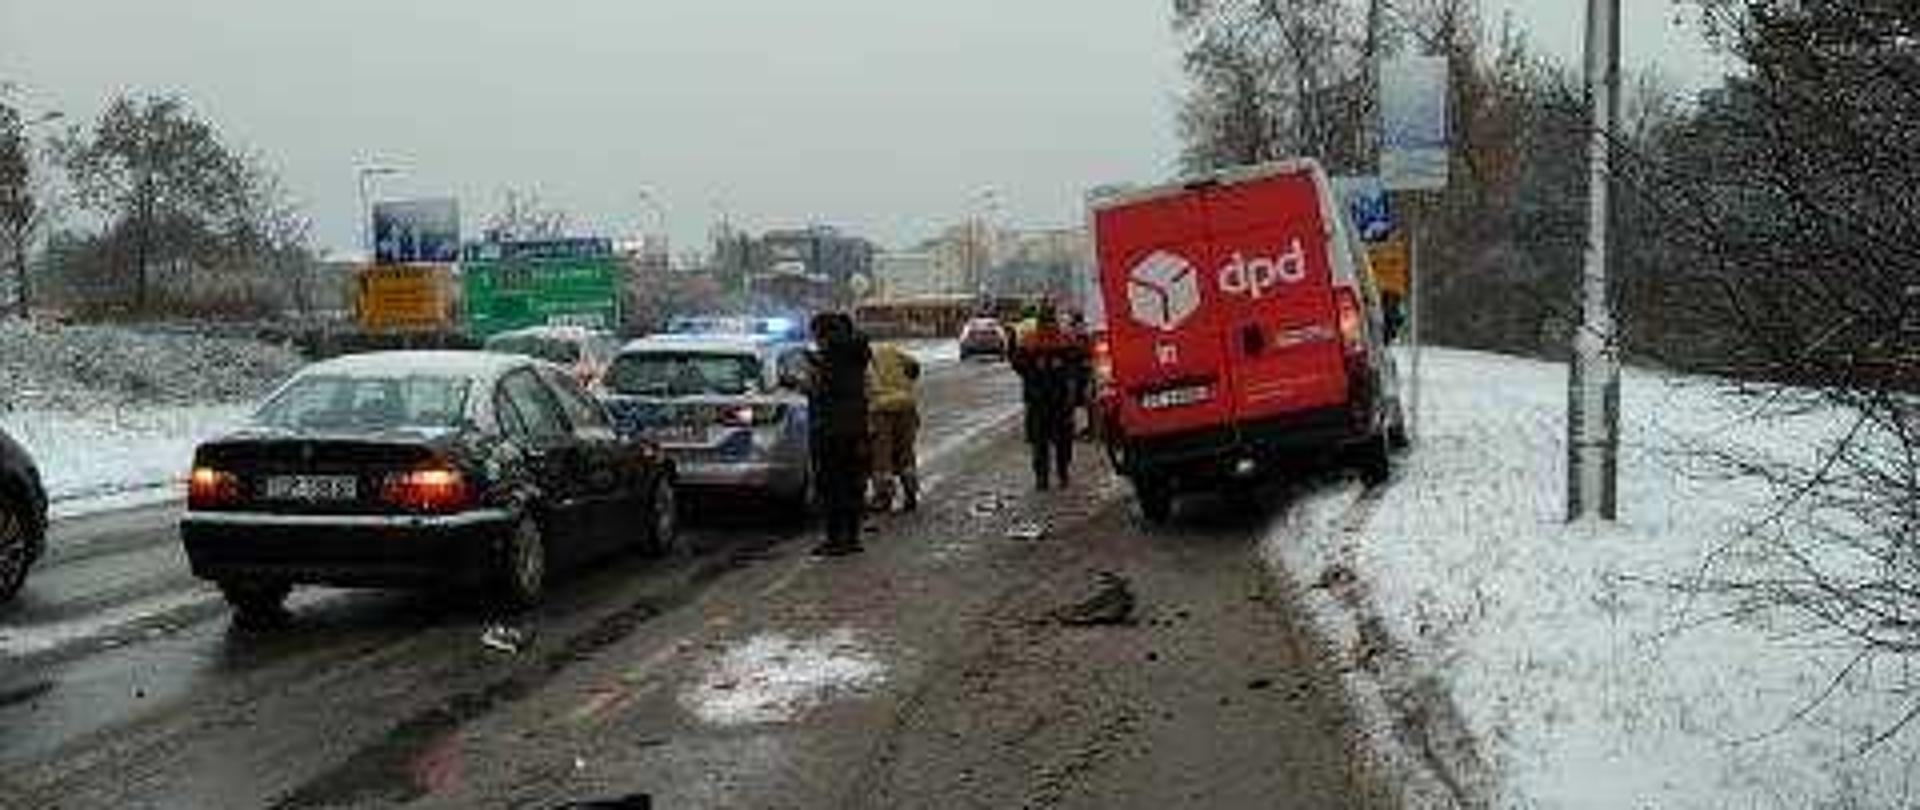 Zdjęcie przedstawia ulicę Tarnowską w Kielcach. Po lewej stronie, stoją dwa samochody biorące udział w zdarzeniu. Przy nich stoją osoby postronne oraz strażak. Po prawej samochód dostawczy również biorący udział w wypadku.